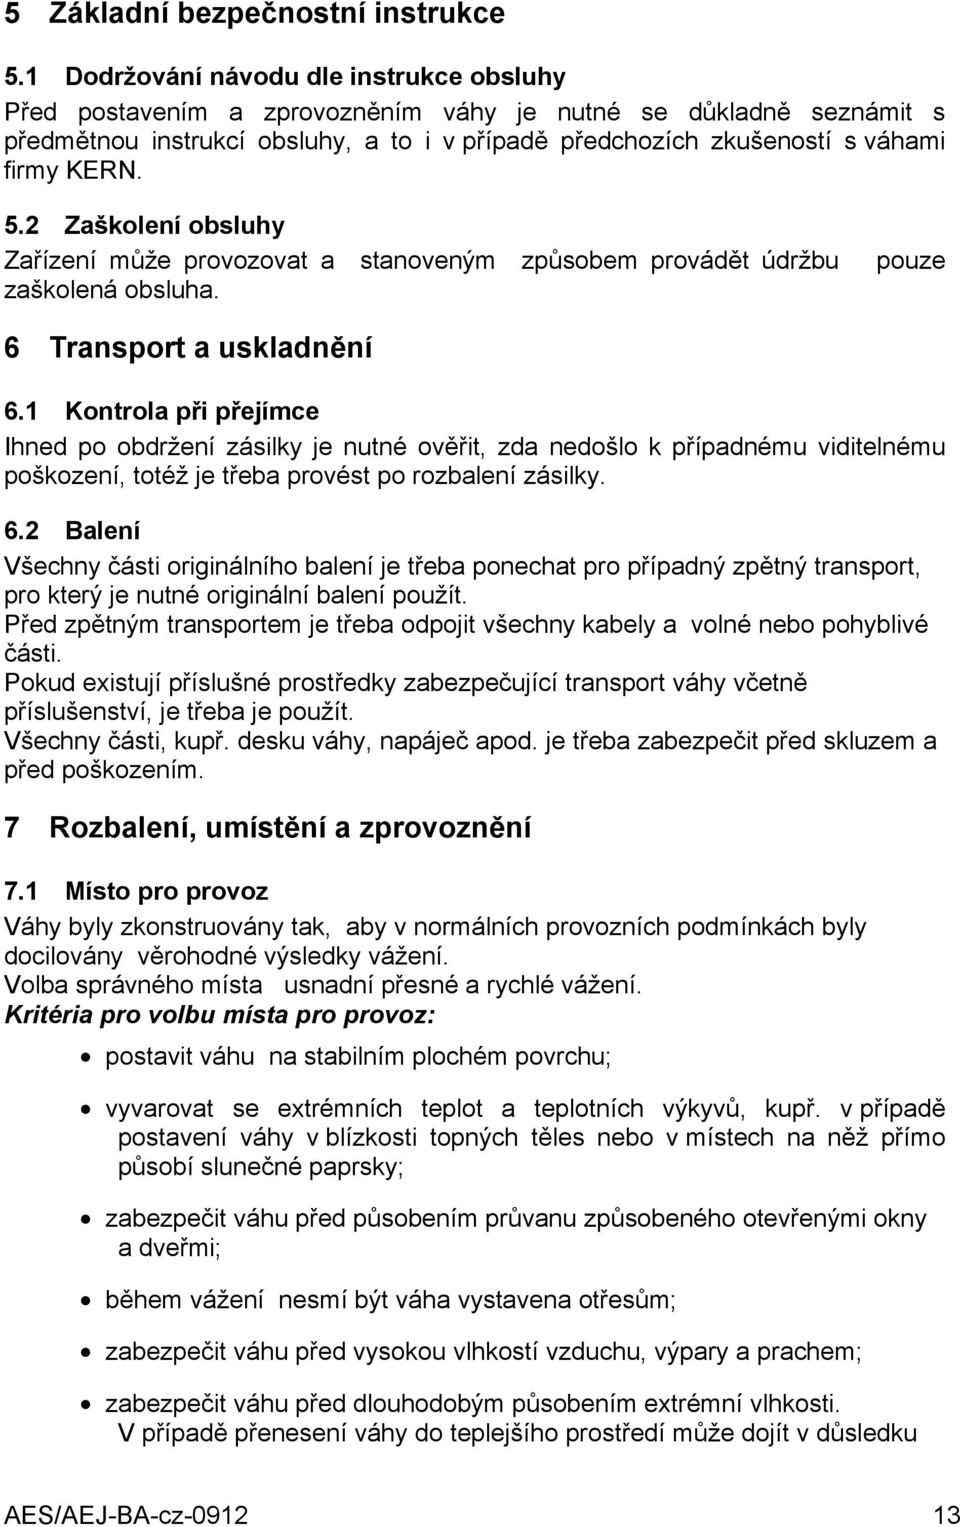 5.2 Zaškolení obsluhy Zařízení může provozovat a stanoveným způsobem provádět údržbu zaškolená obsluha. pouze 6 Transport a uskladnění 6.